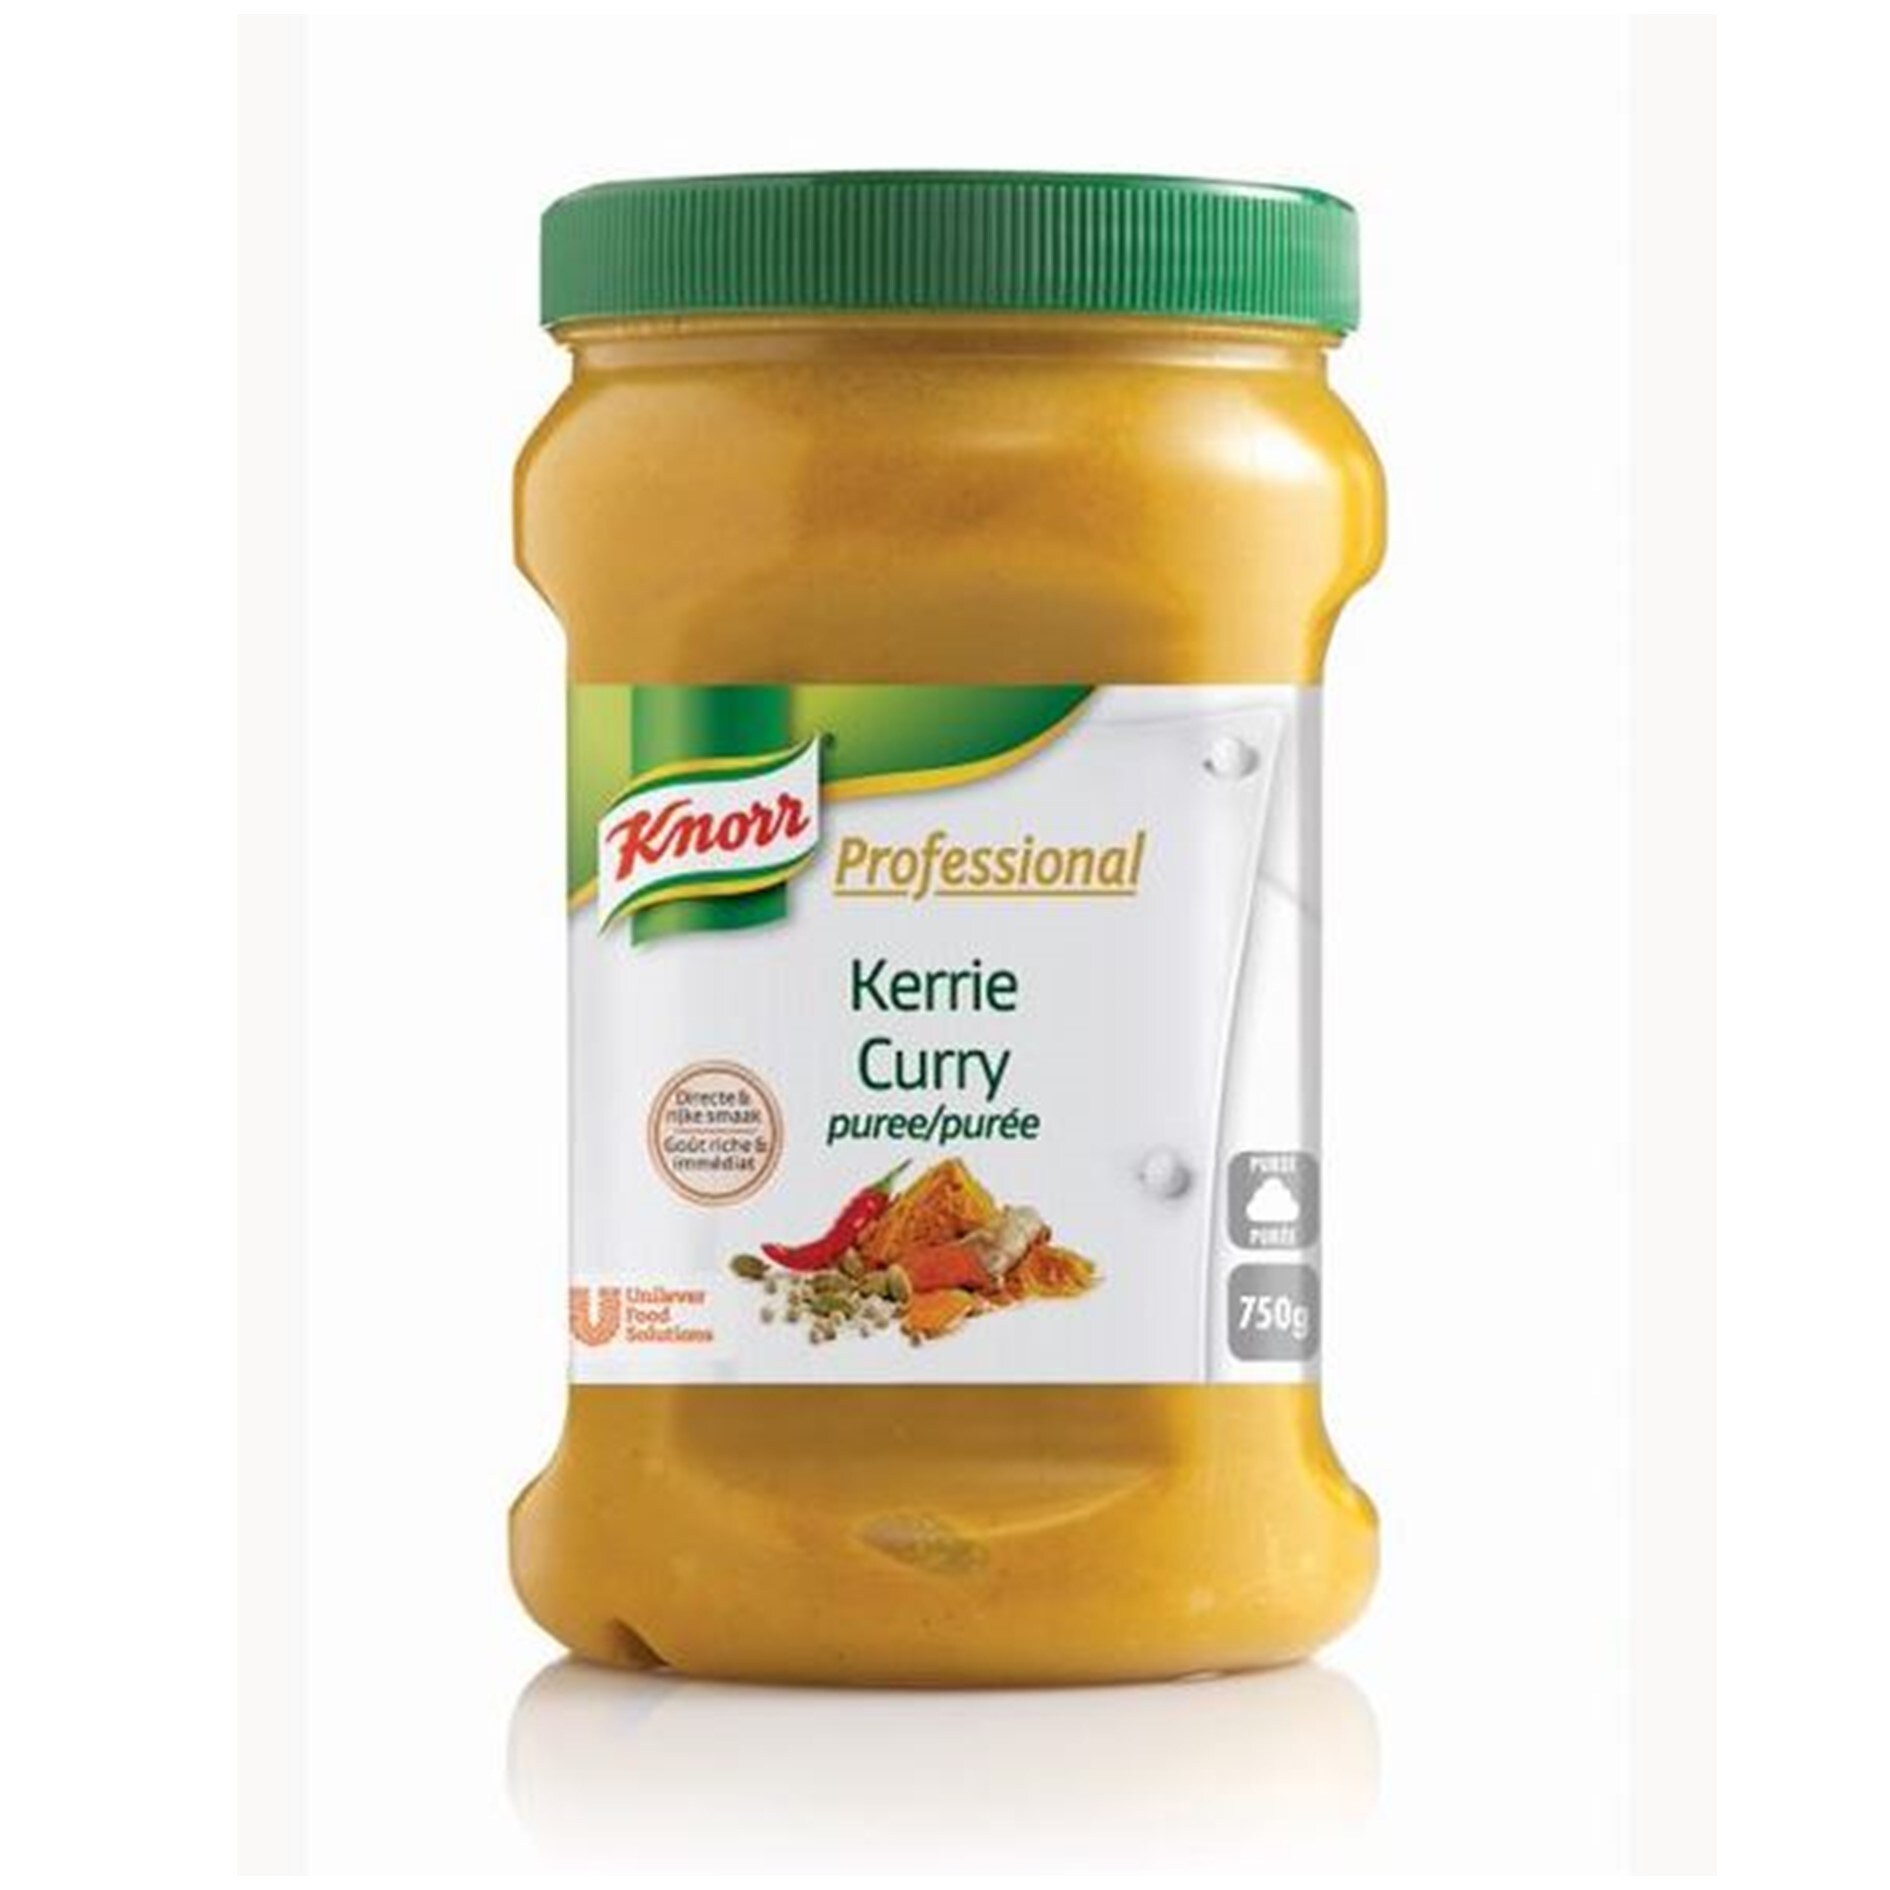 Knorr Professional Purée de curry pot 750g - Des recettes développées en partenariat avec le chef étoilé Bruno Oger, pour vous donner la garantie du meilleur goût.